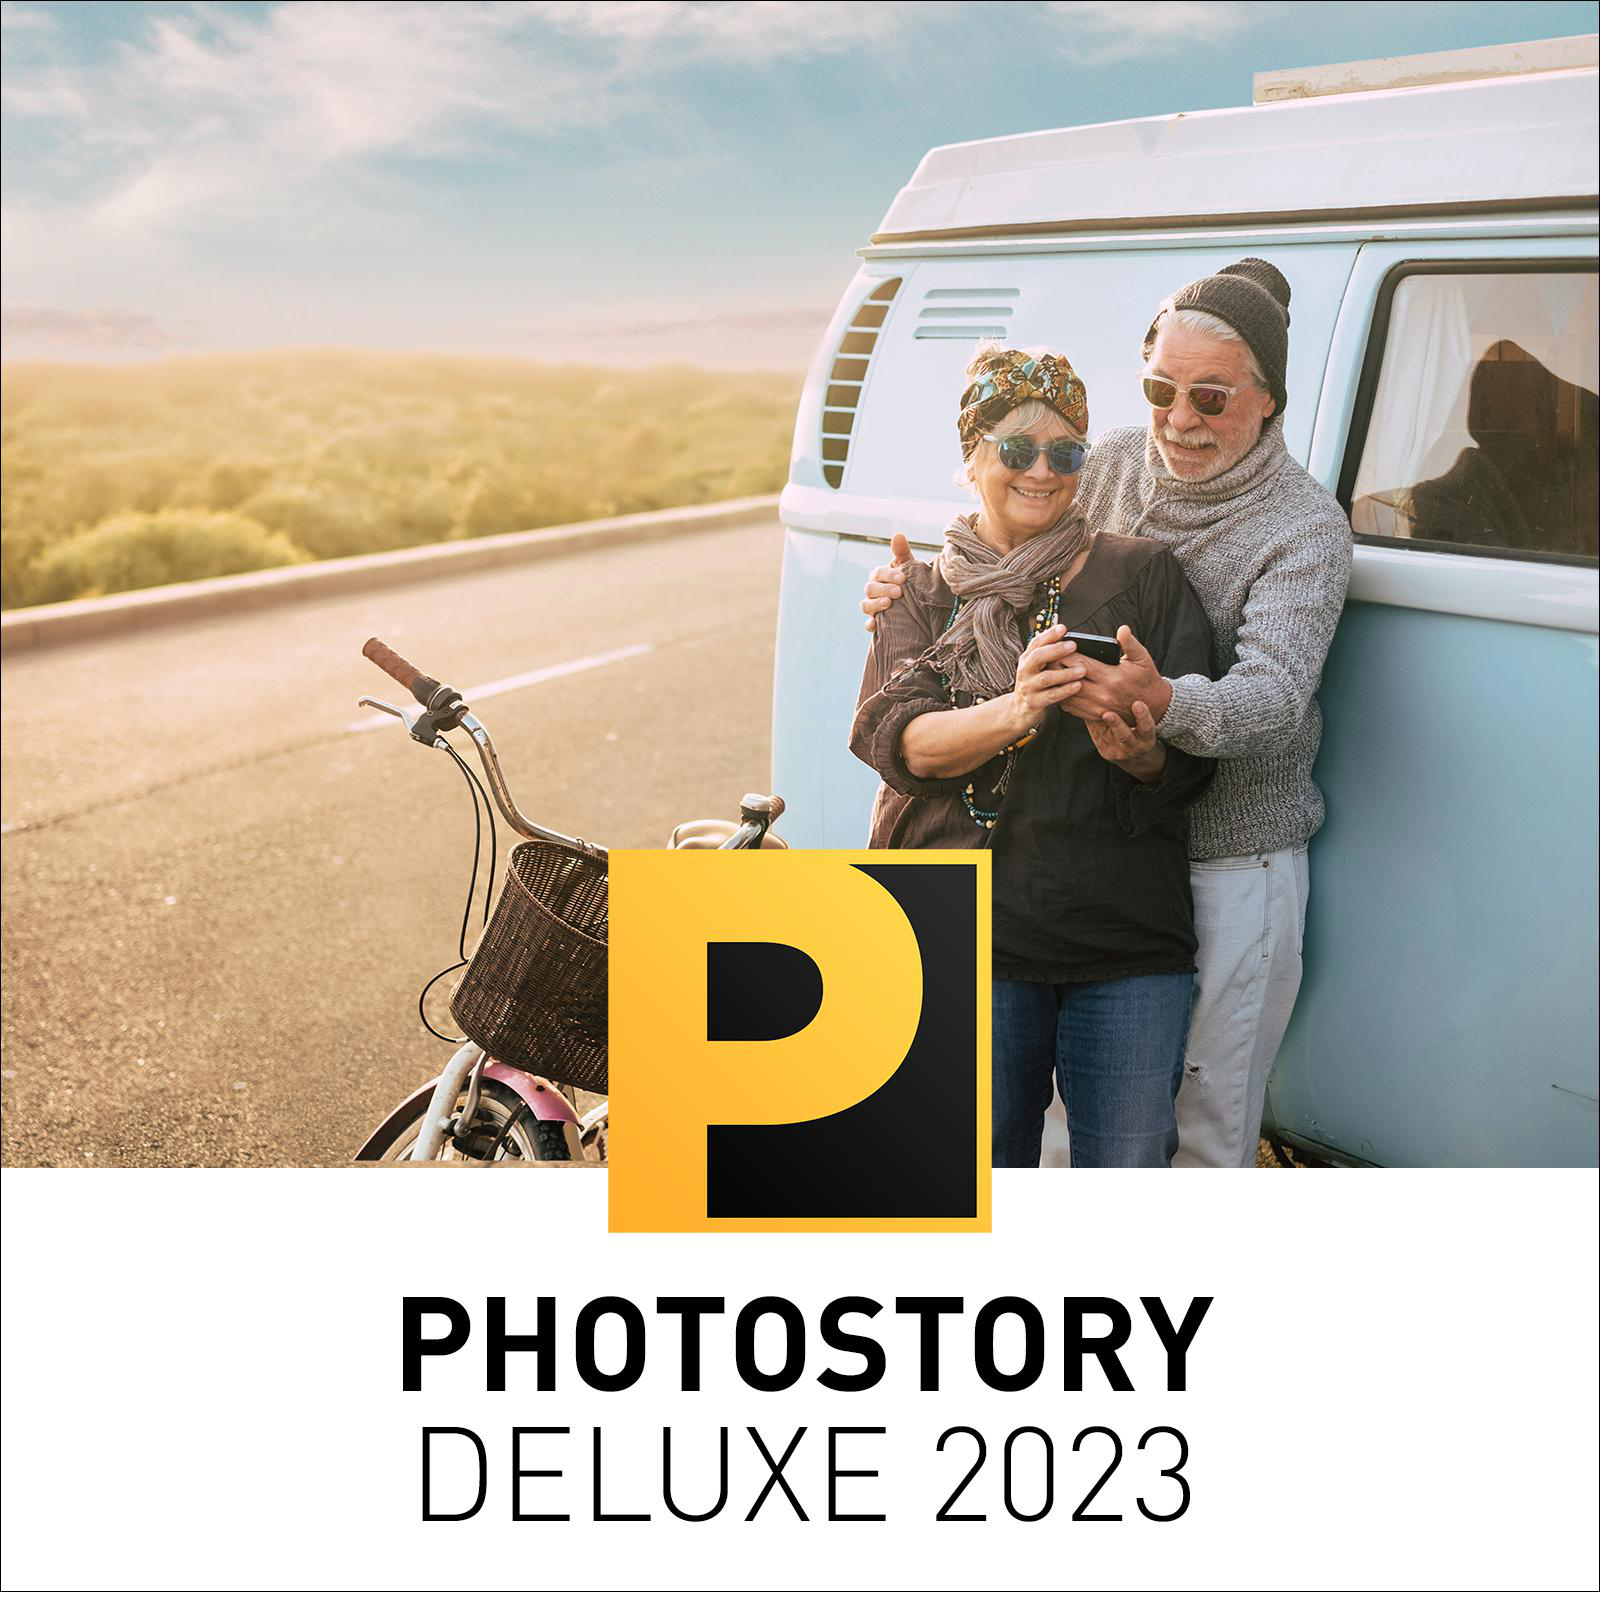 PHOTOSTORY - MAGIX 2023 DELUXE [PC]